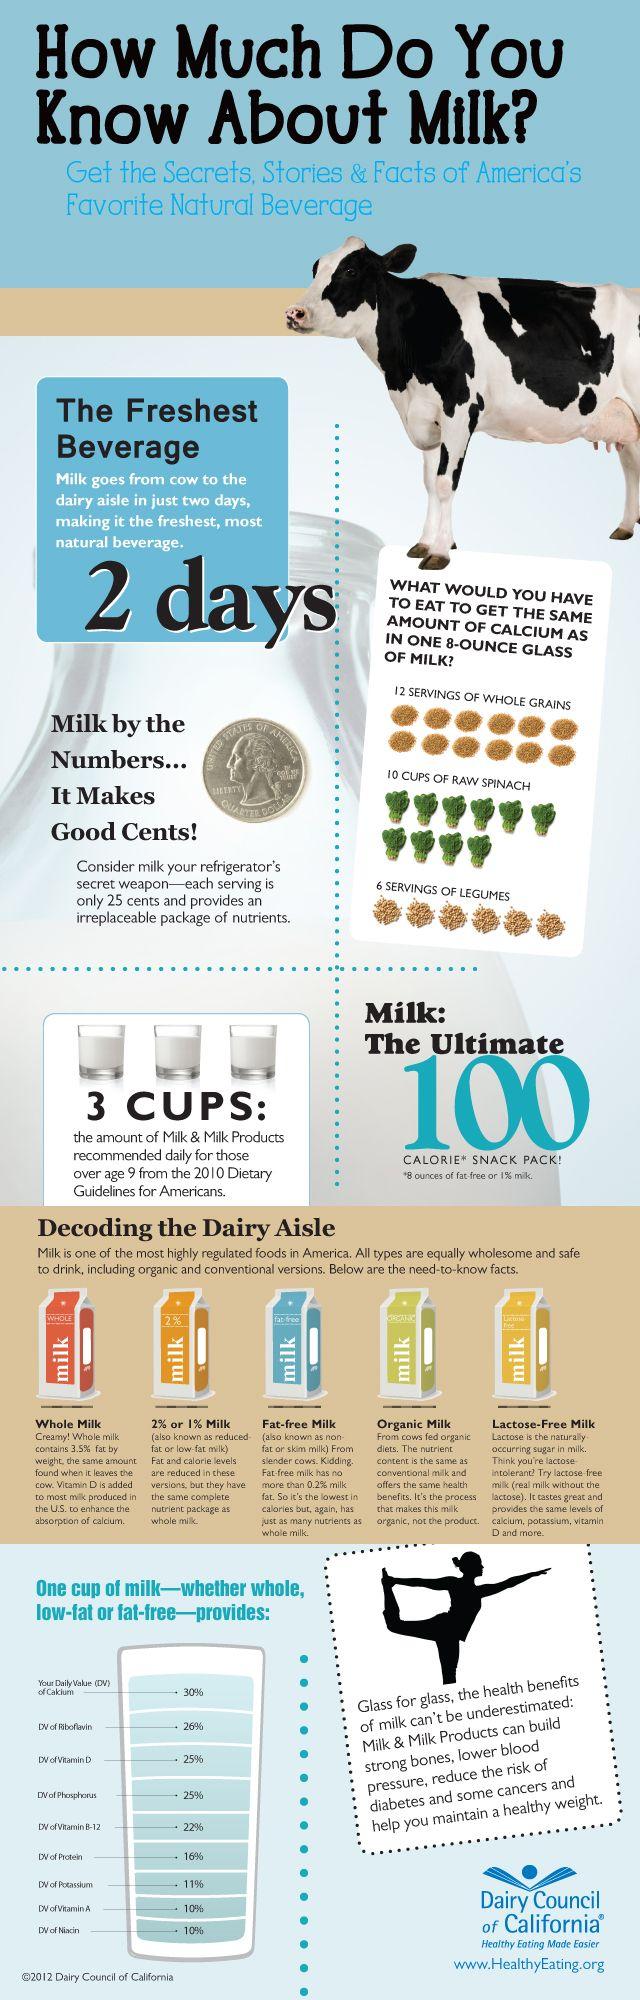 Money Got Milk Logo - Got Milk? | Daily Infographic